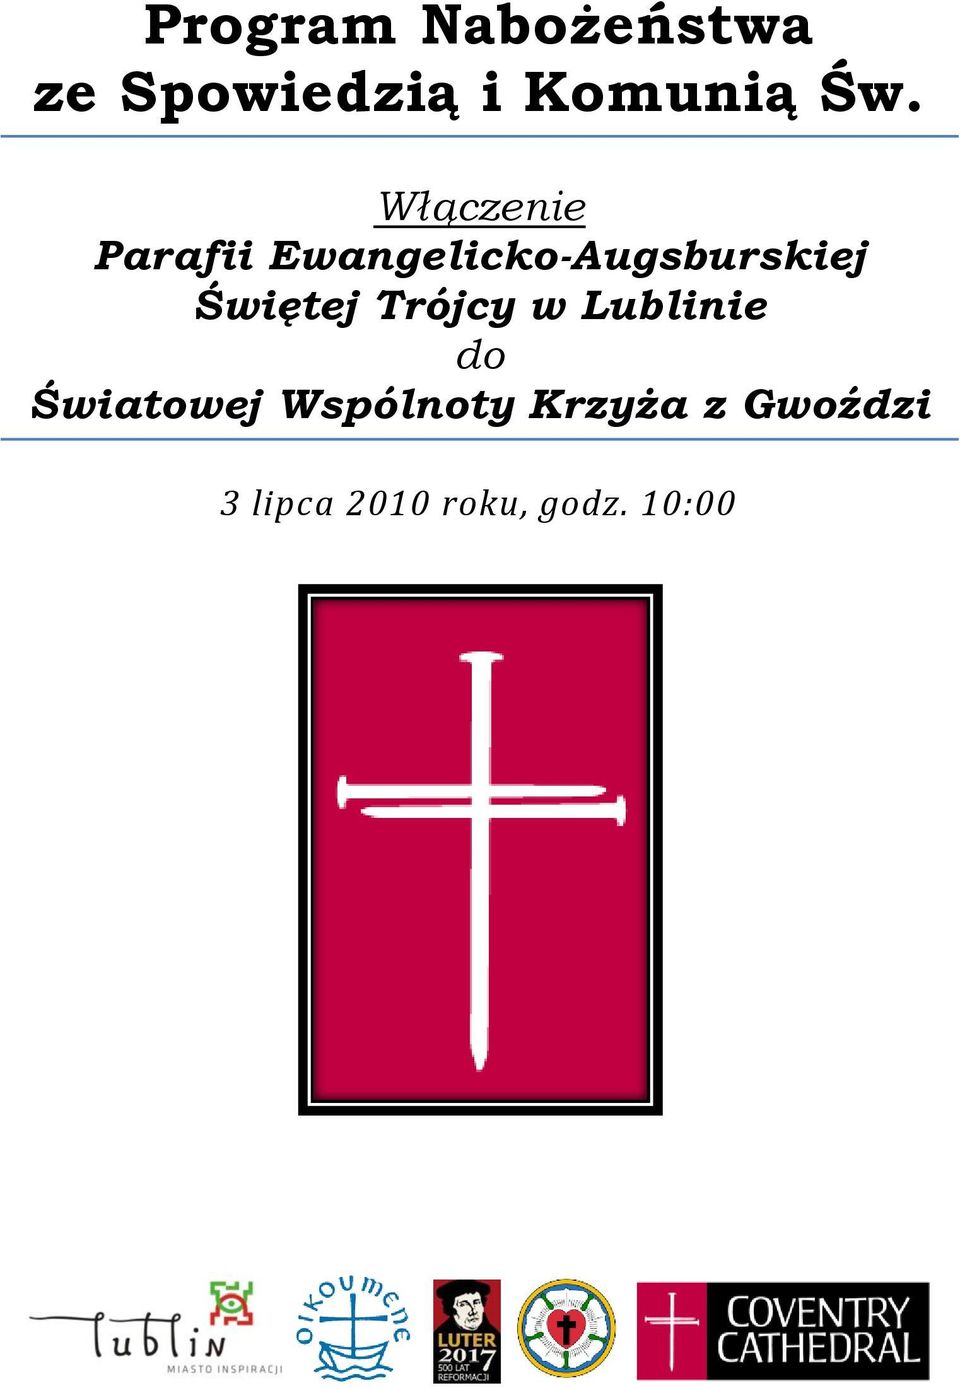 Świętej Trójcy w Lublinie do Światowej